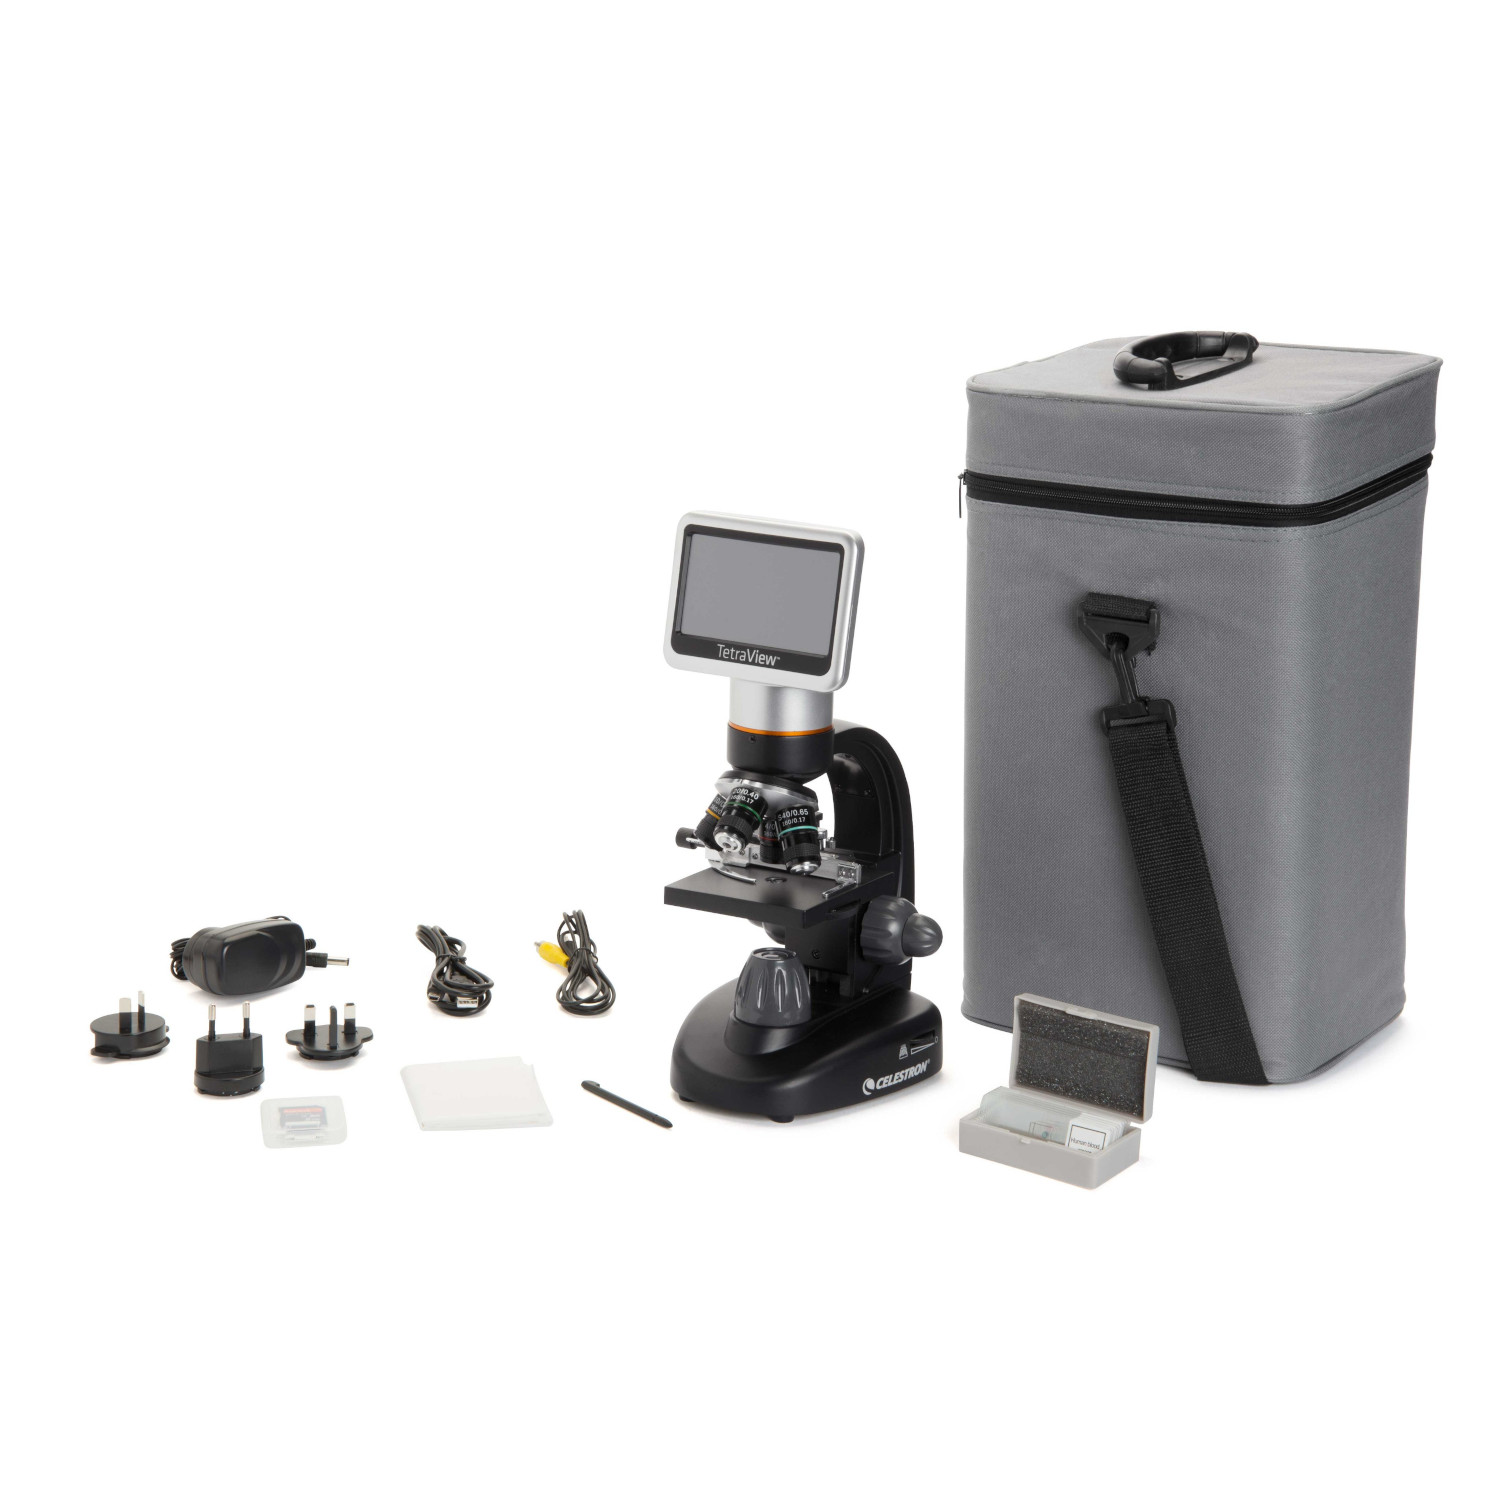 アウトレット半額 TOMLOV デジタル顕微鏡 ベーススタンド BS02、 顕微鏡 CONVERSADEQUINTALCOM